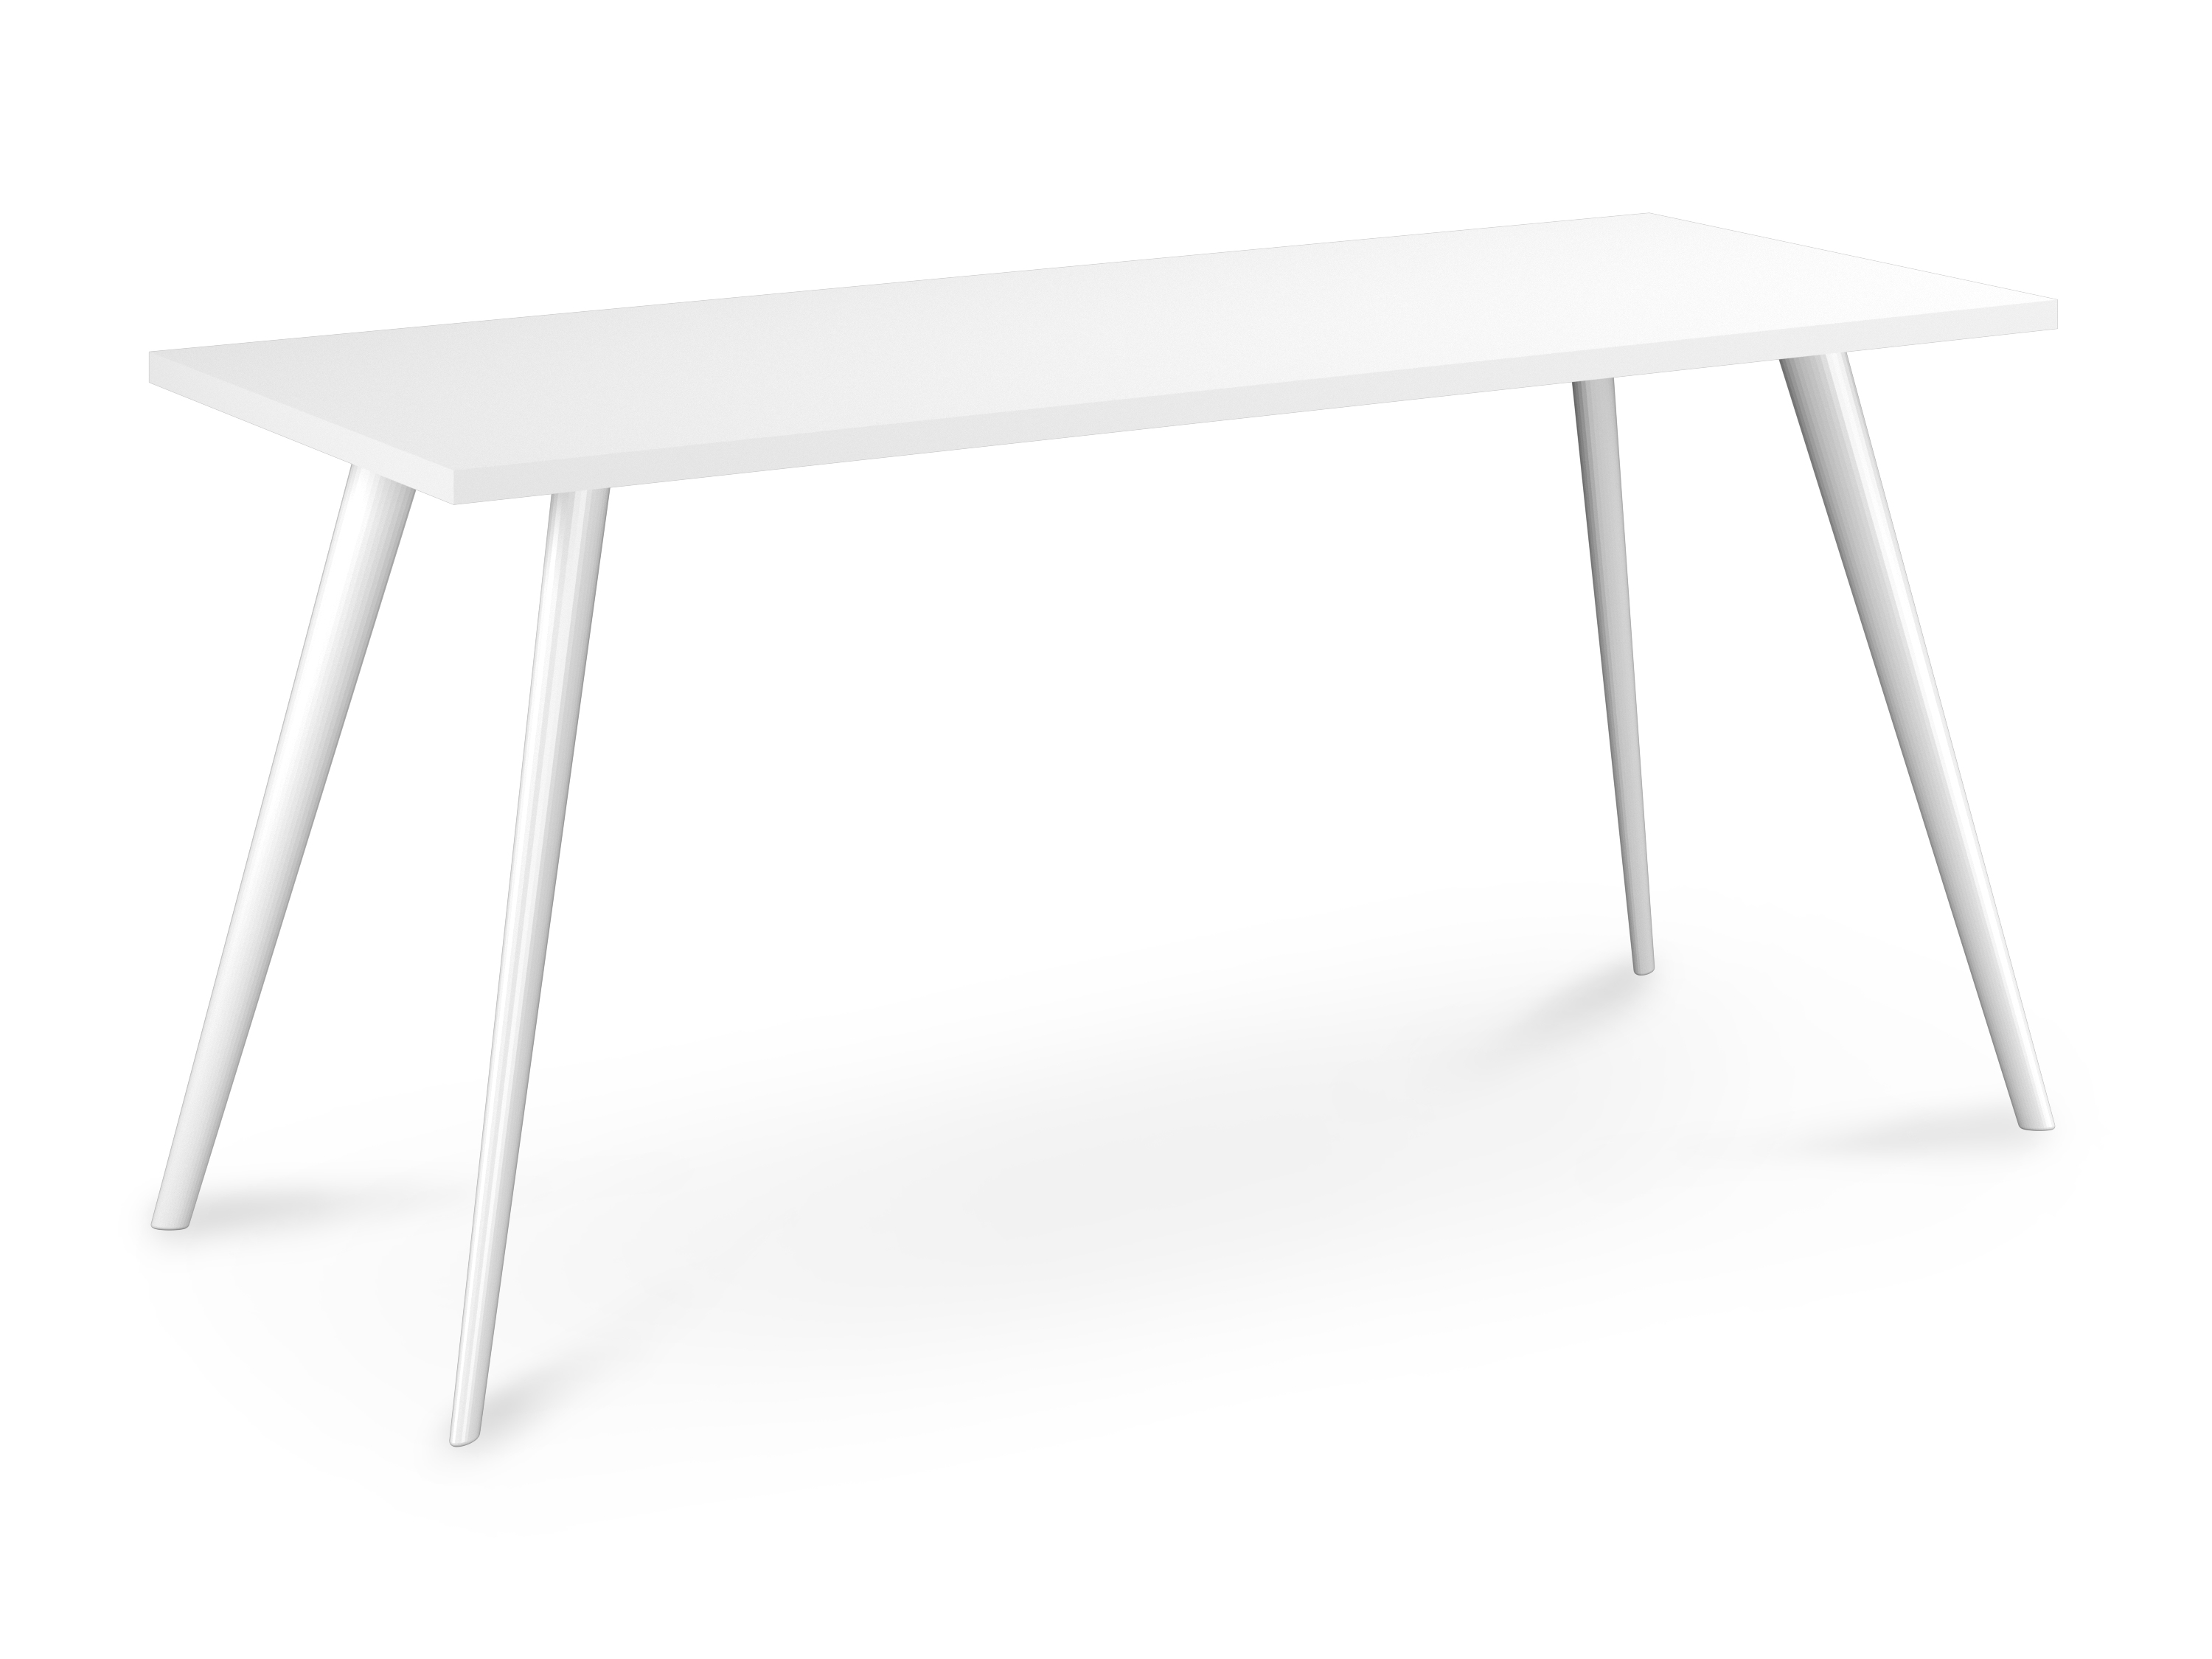 WS - Air desk - White legs, White